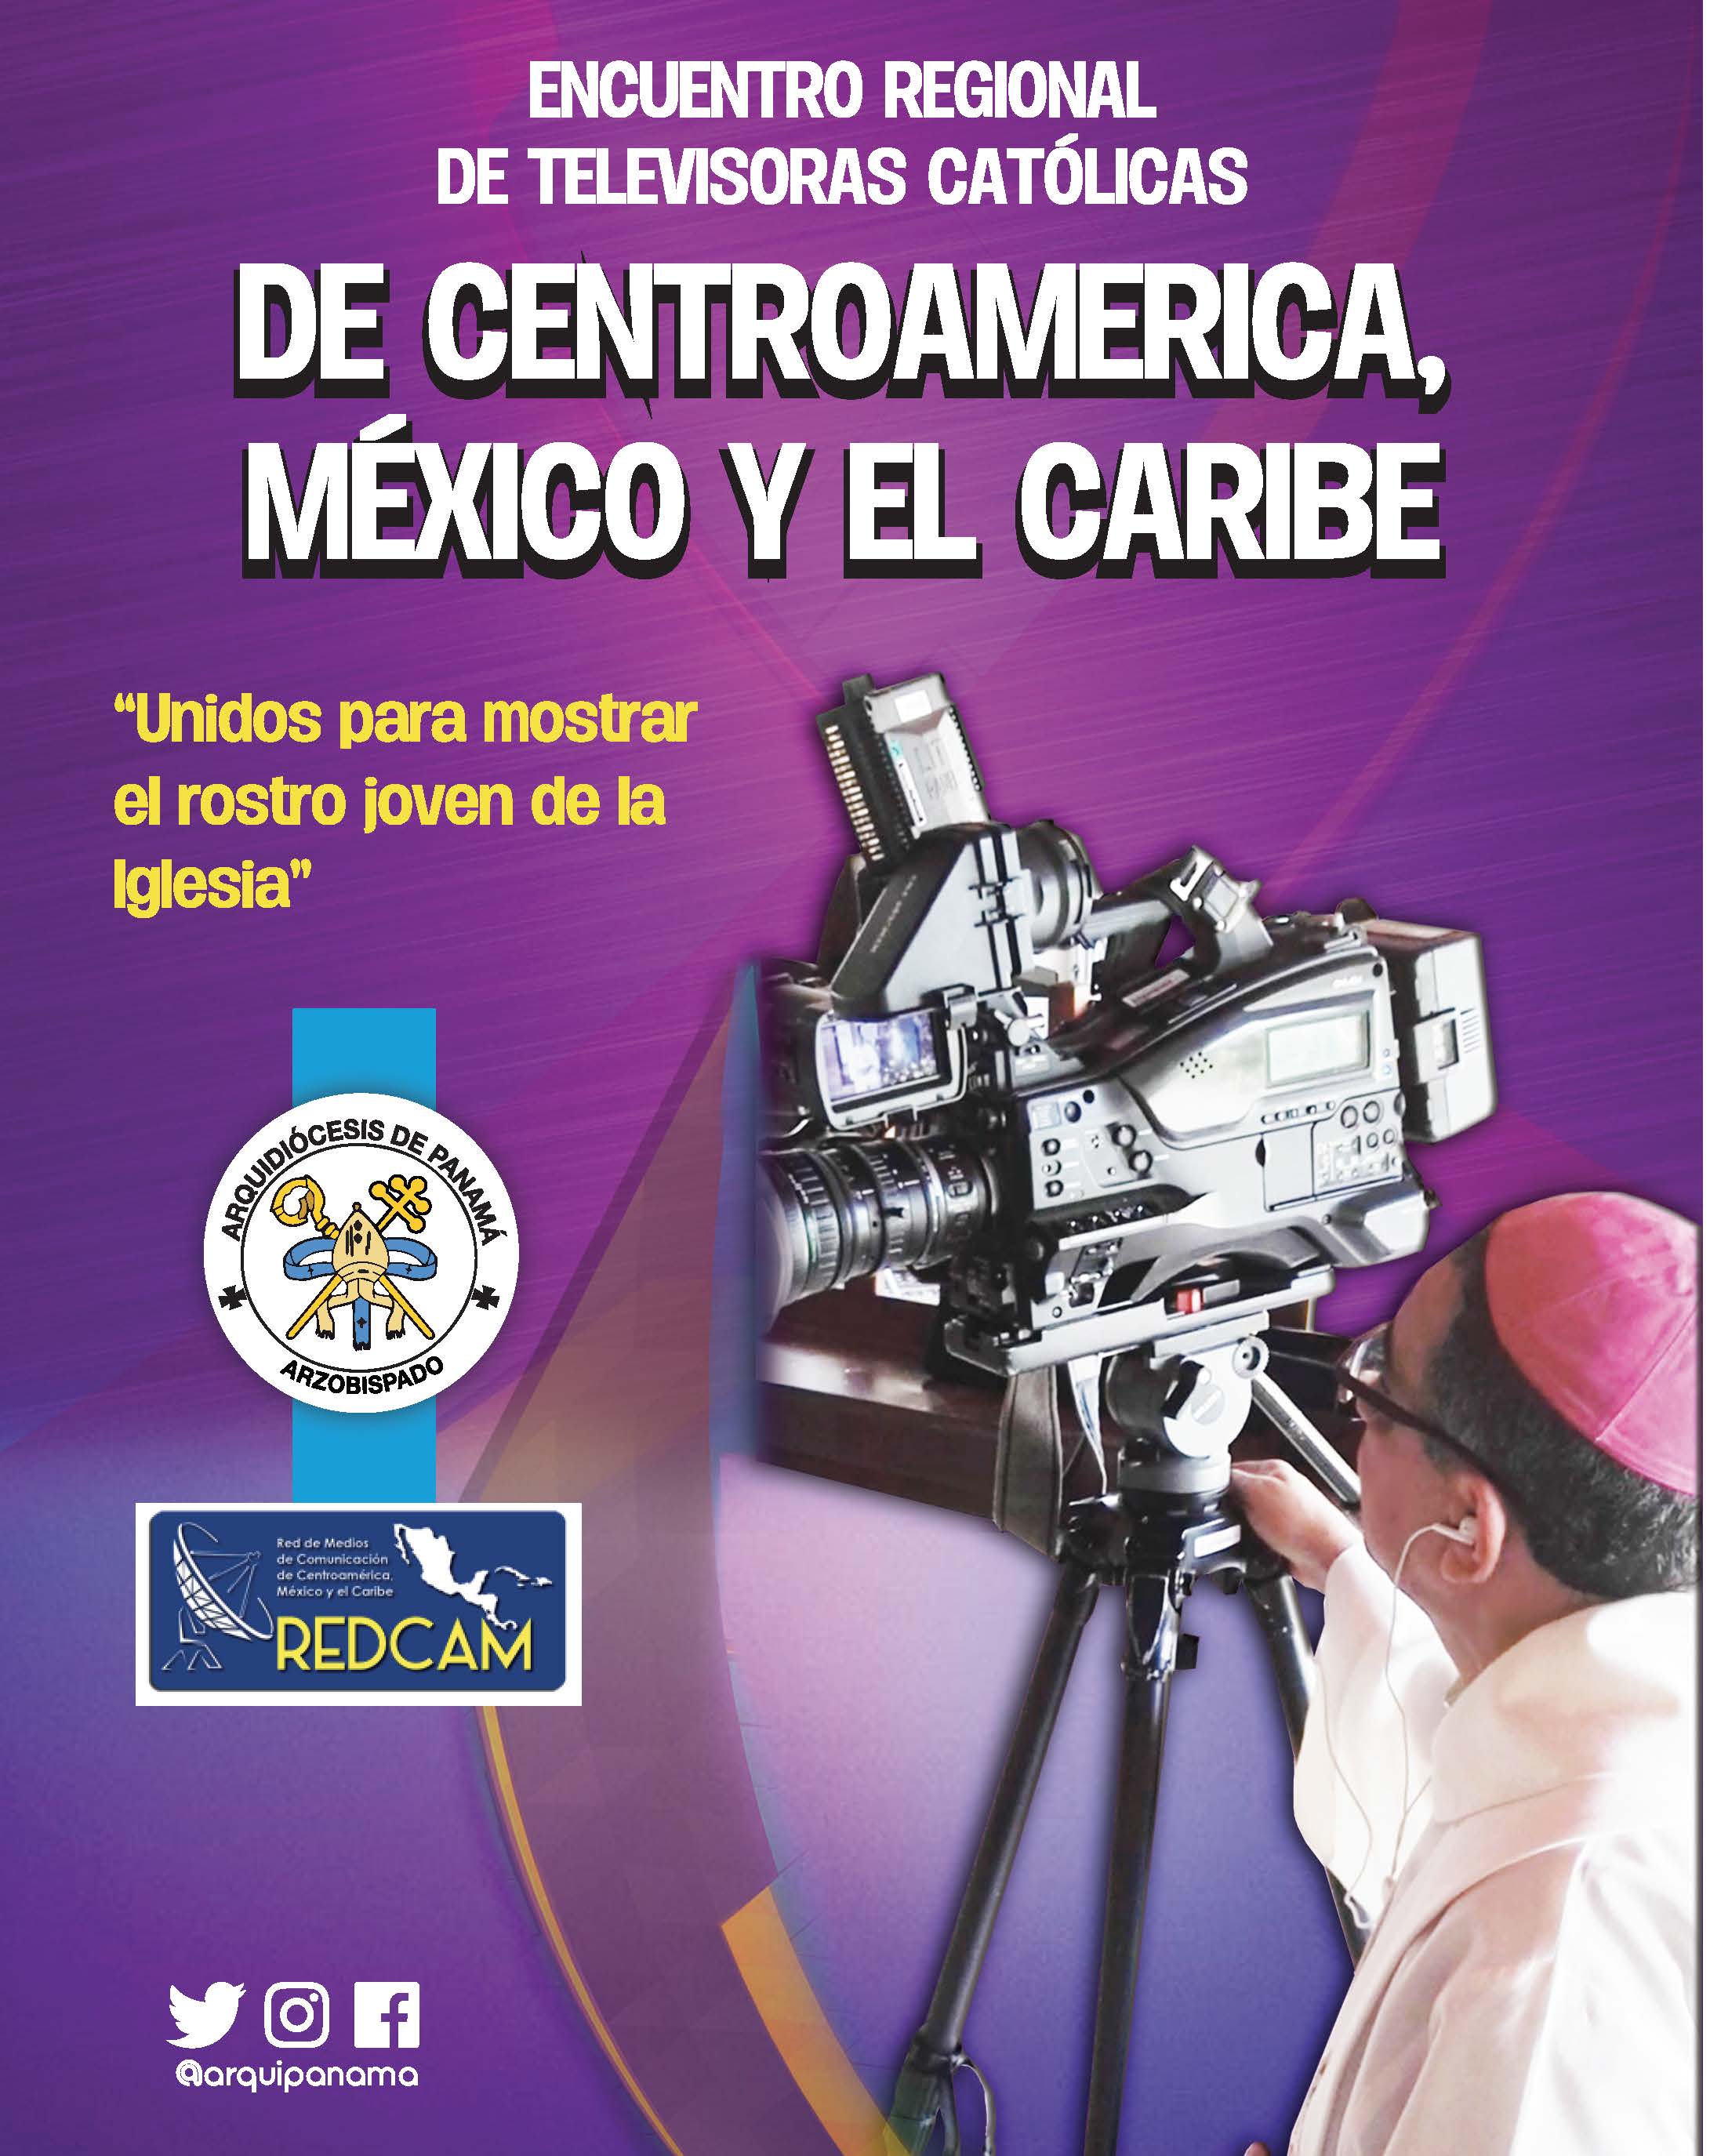 ENCUENTRO REGIONAL DE TELEVISORAS CATÓLICAS de Centroamérica, México  y el Caribe